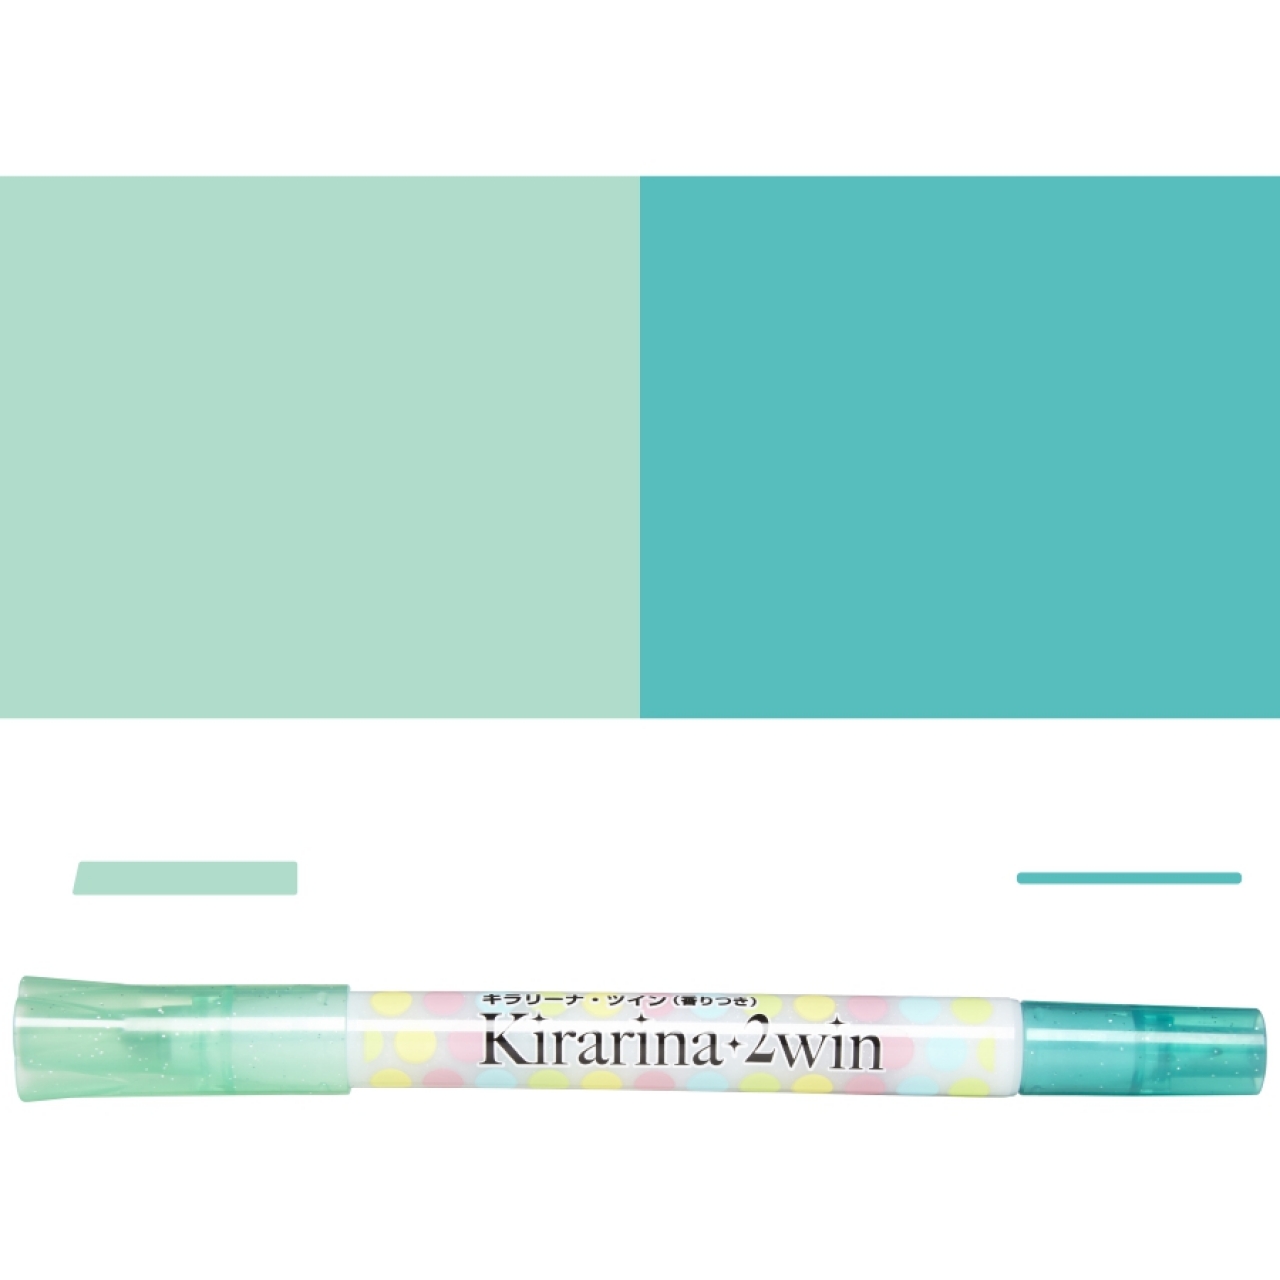 Kirarina 2win - Mint